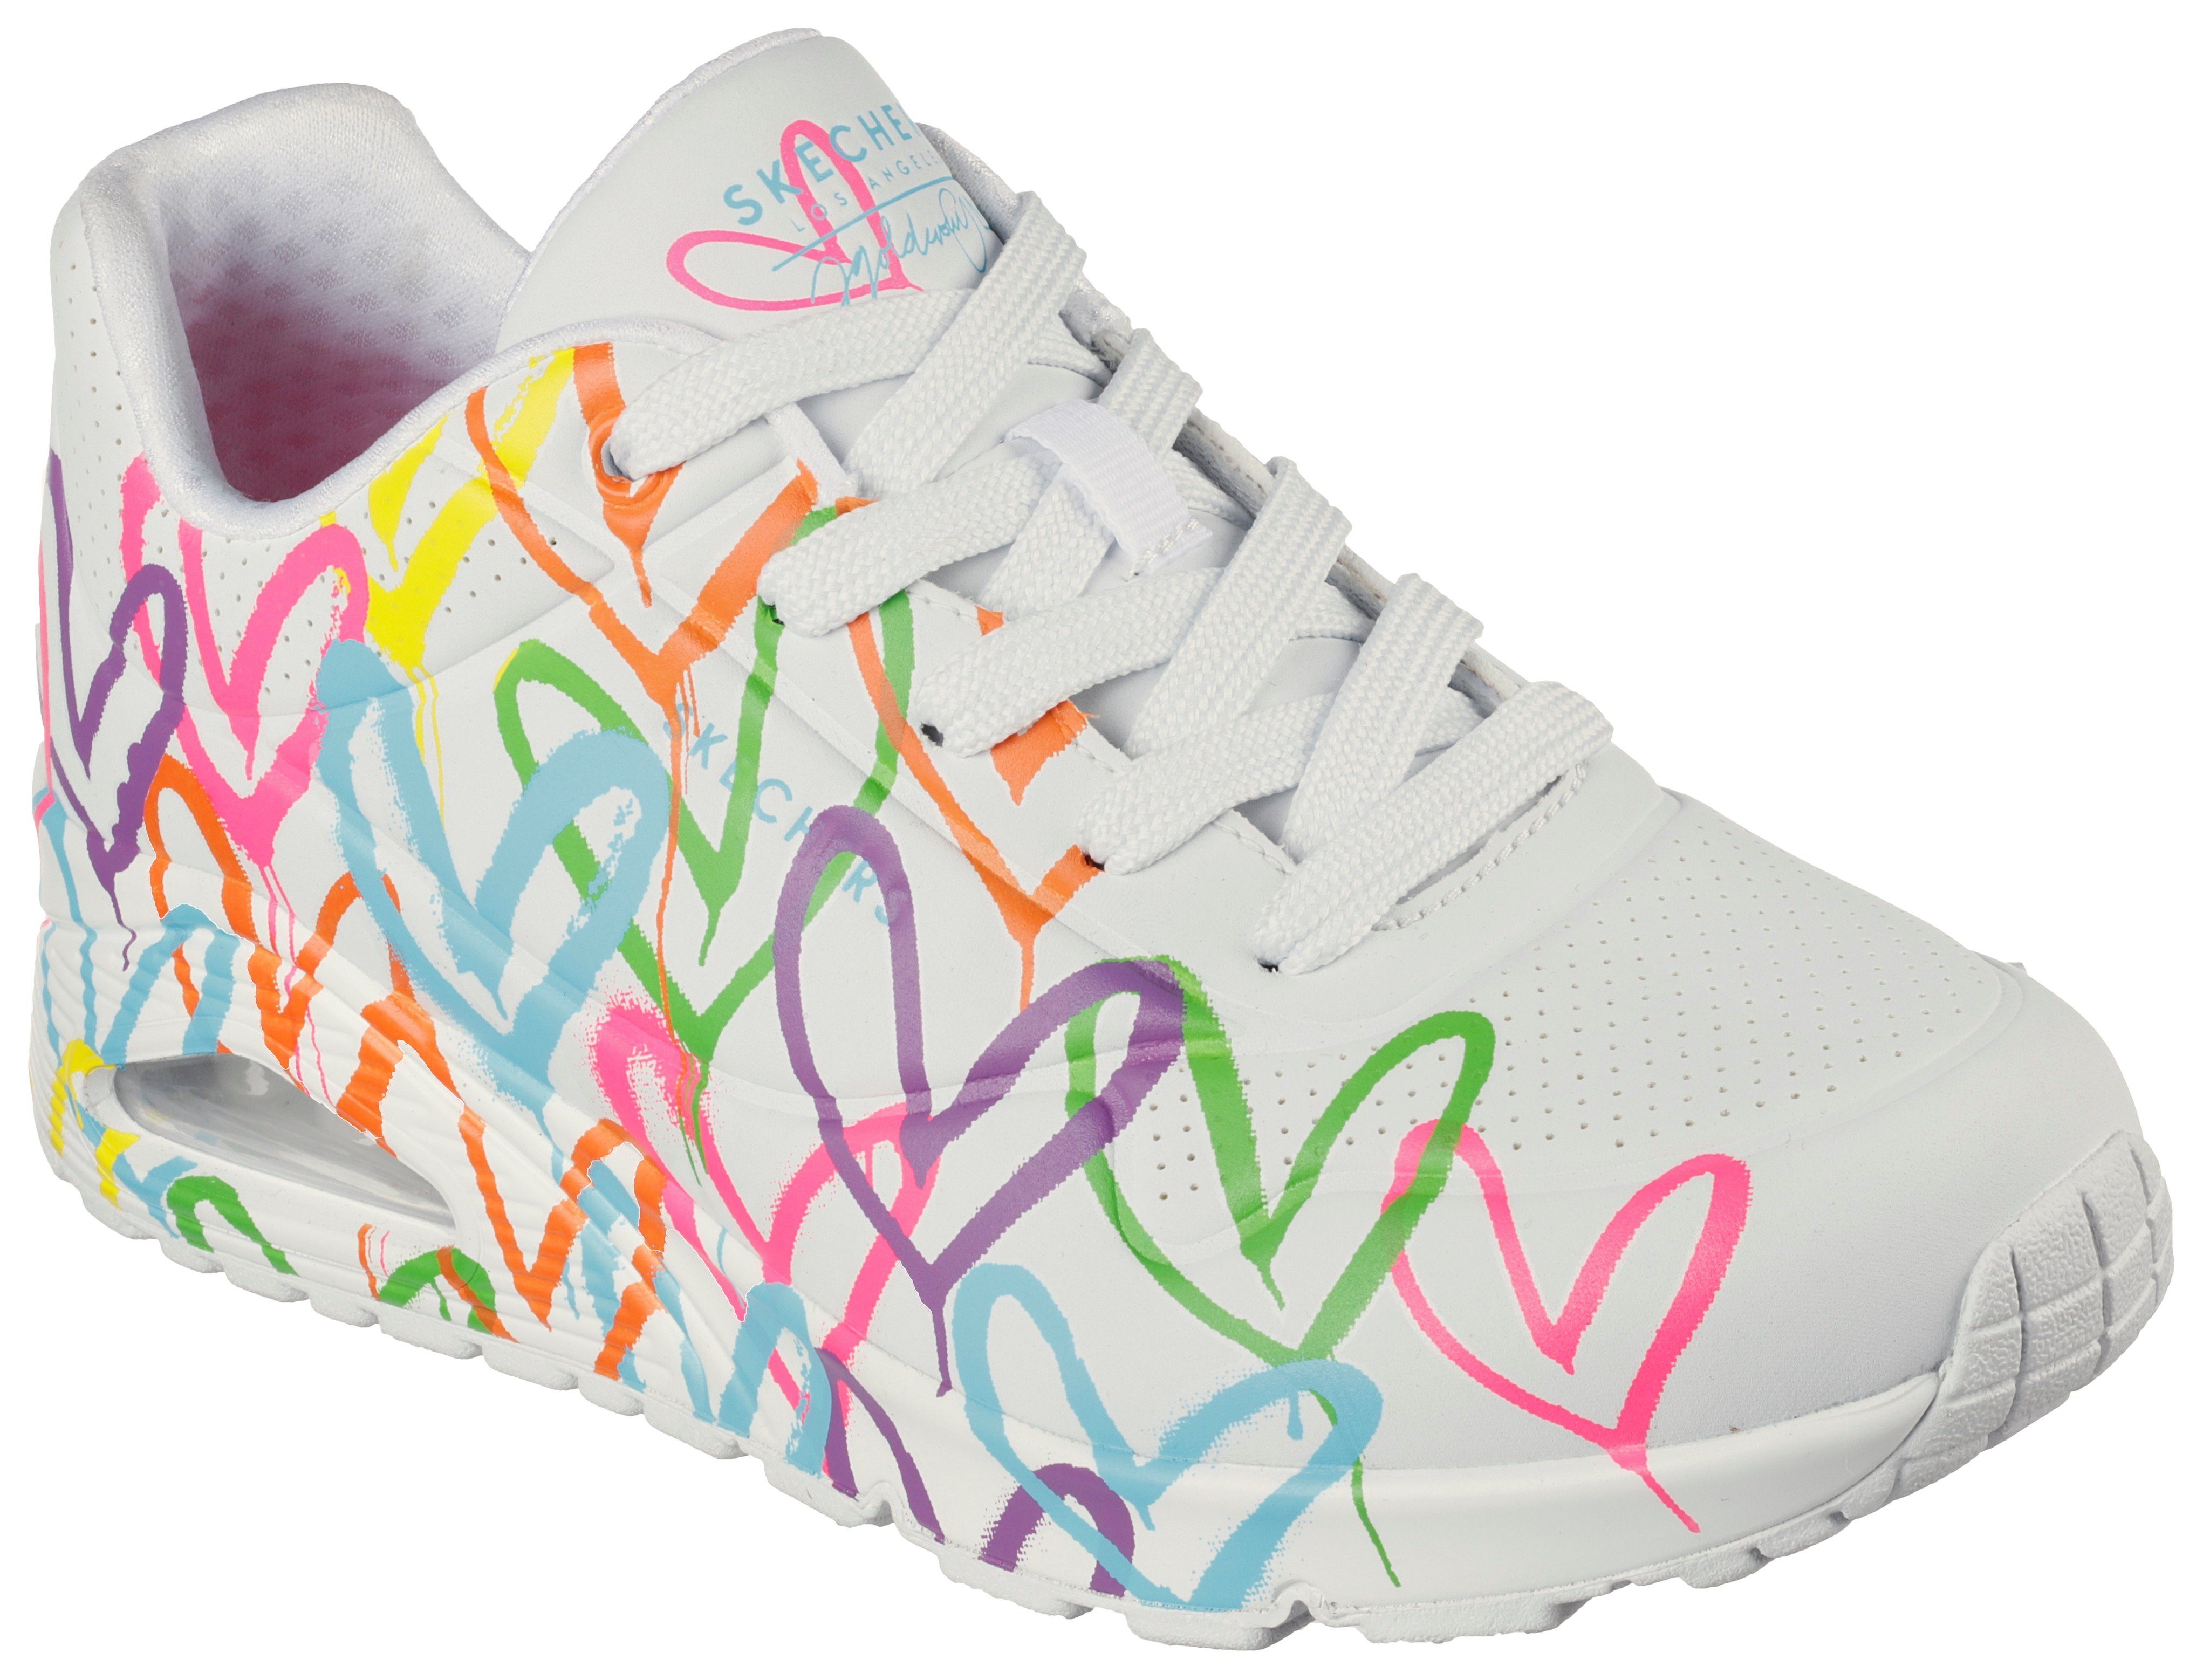 Skechers LOVE weiß-multi UNO farbenfrohen HIGHLIGHT Herzchen-Print Sneaker - mit